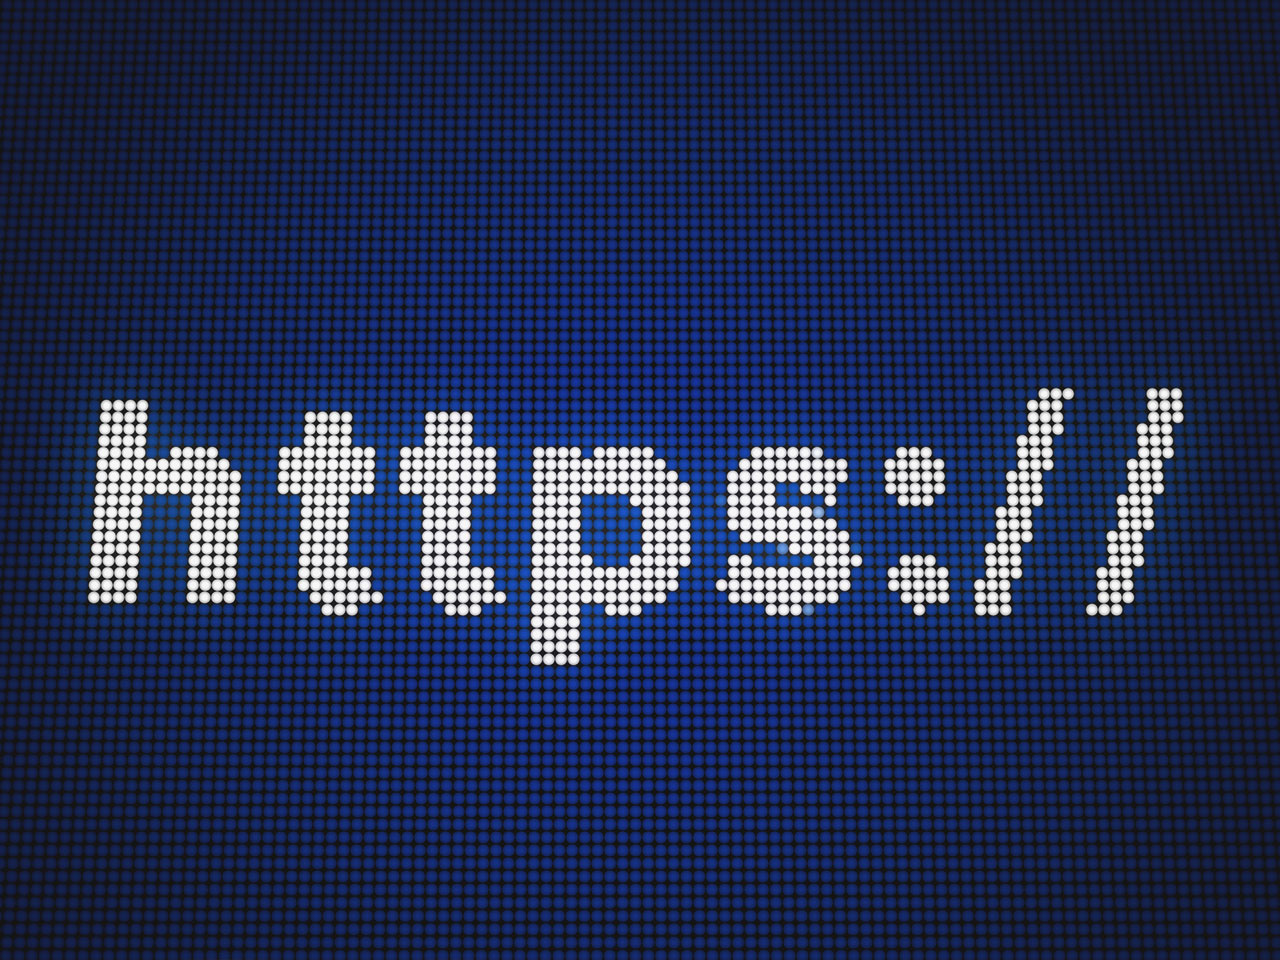 Почему на моем сайте не работает SSL / HTTPS?